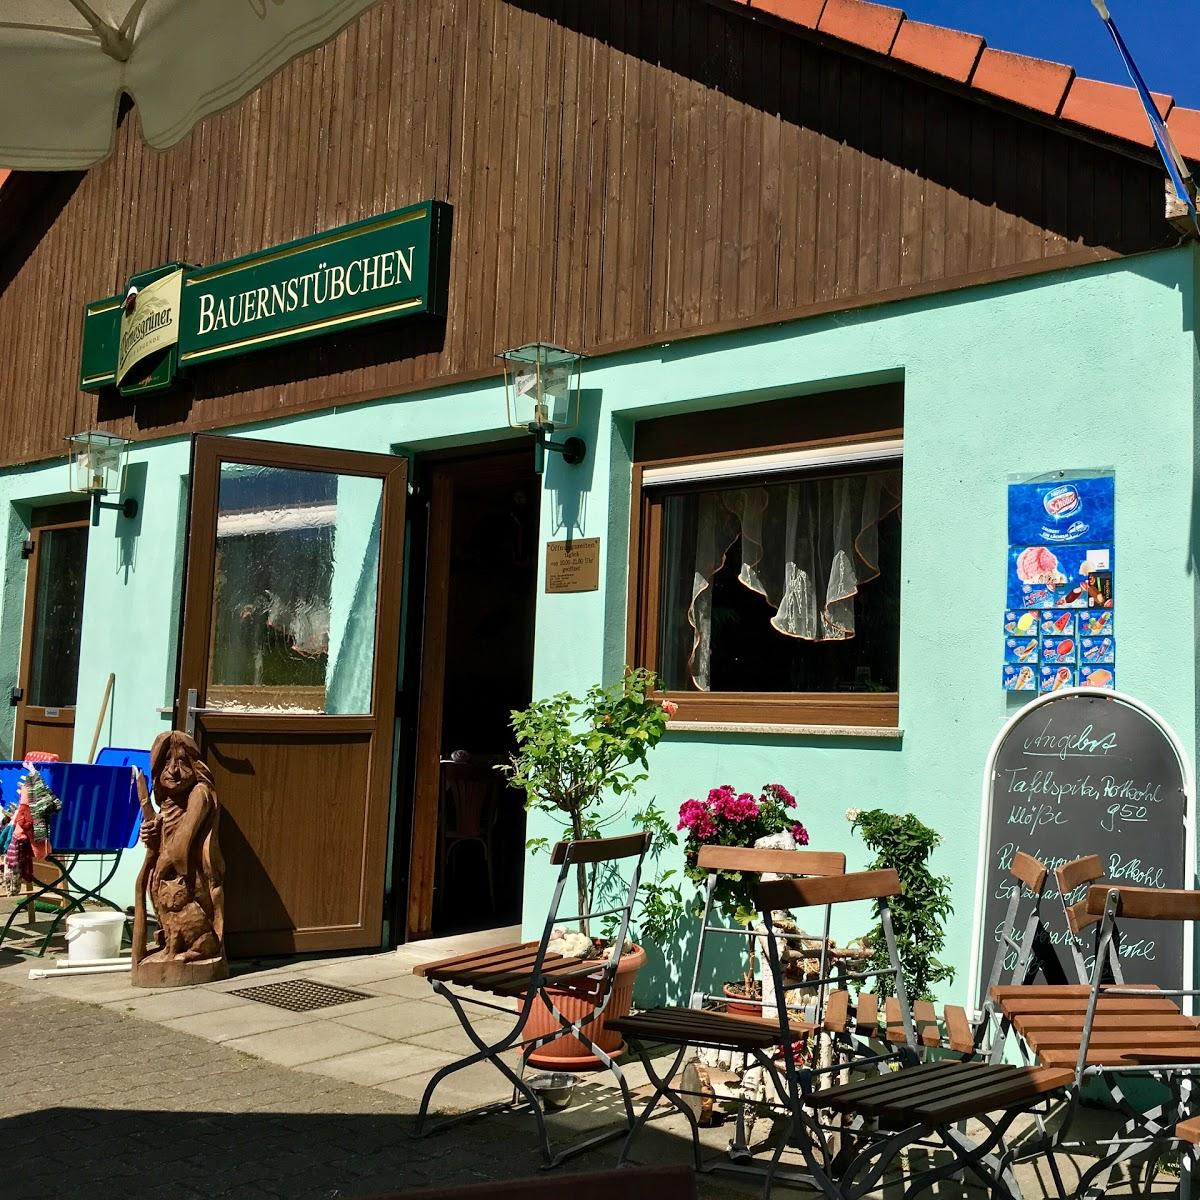 Restaurant "Gaststätte Bauernstübchen" in Ziltendorf